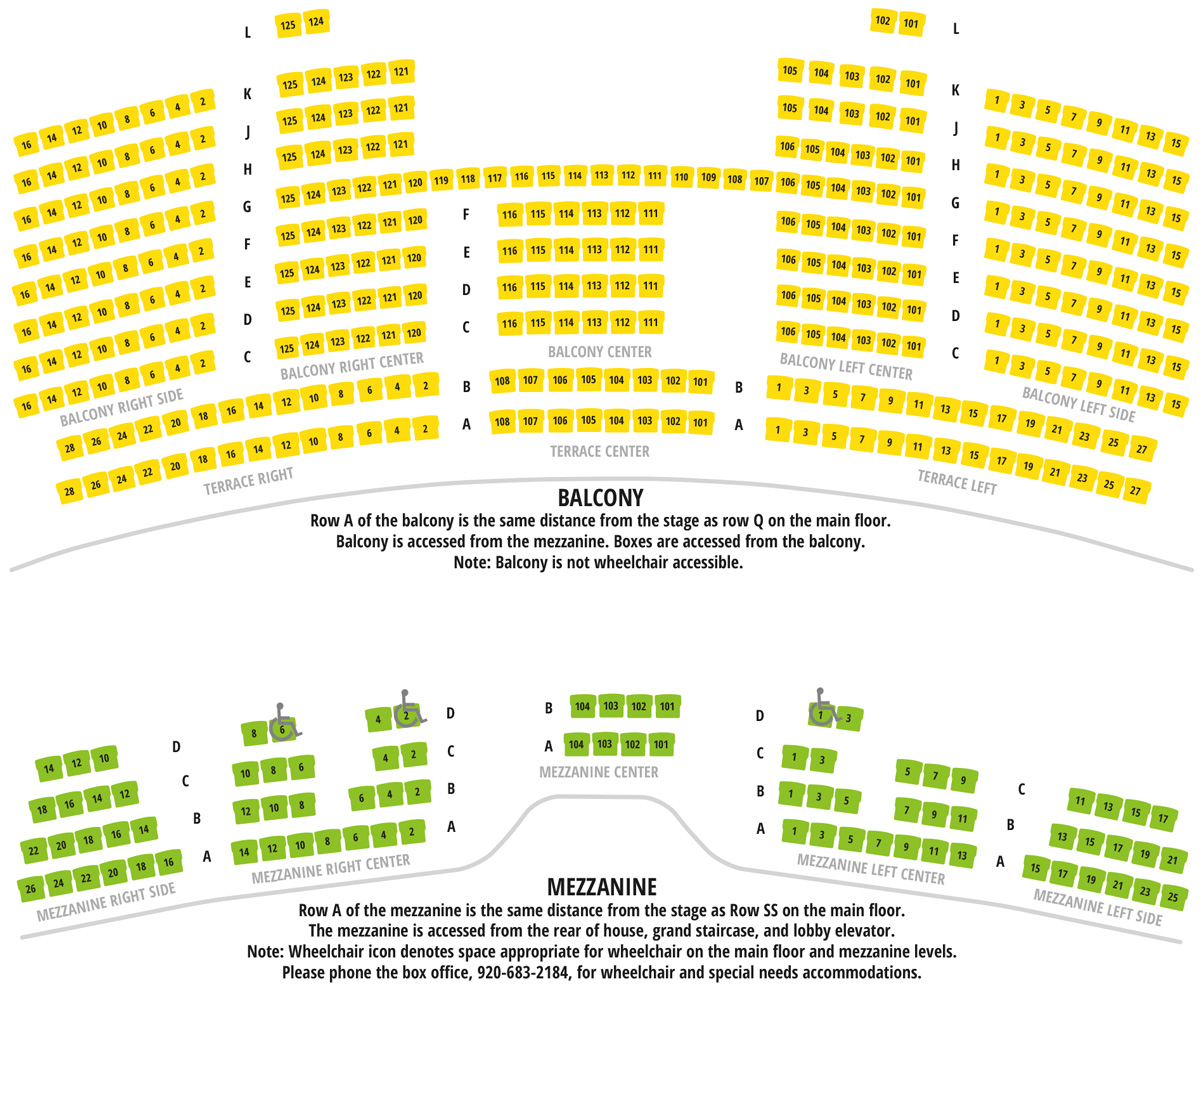 Weill Center Sheboygan Seating Chart